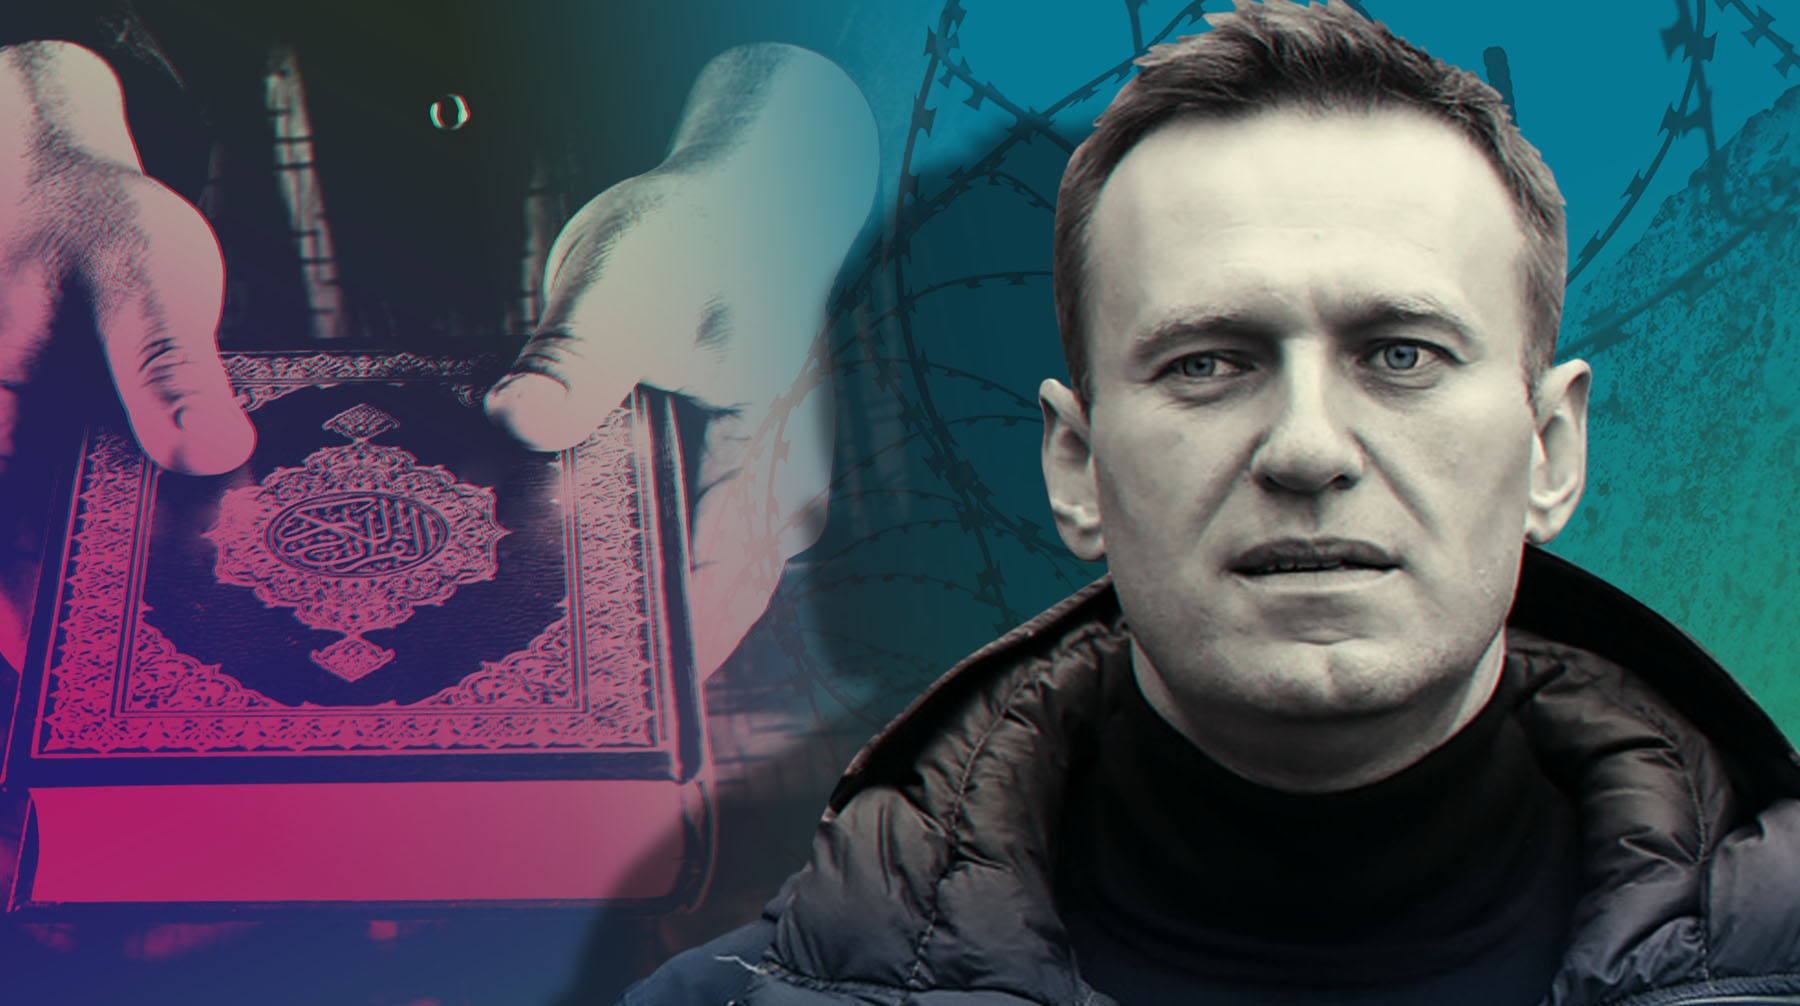 Dailystorm - Лидер мусульманской общины в Покрове готов встретиться с Навальным и передать ему Коран